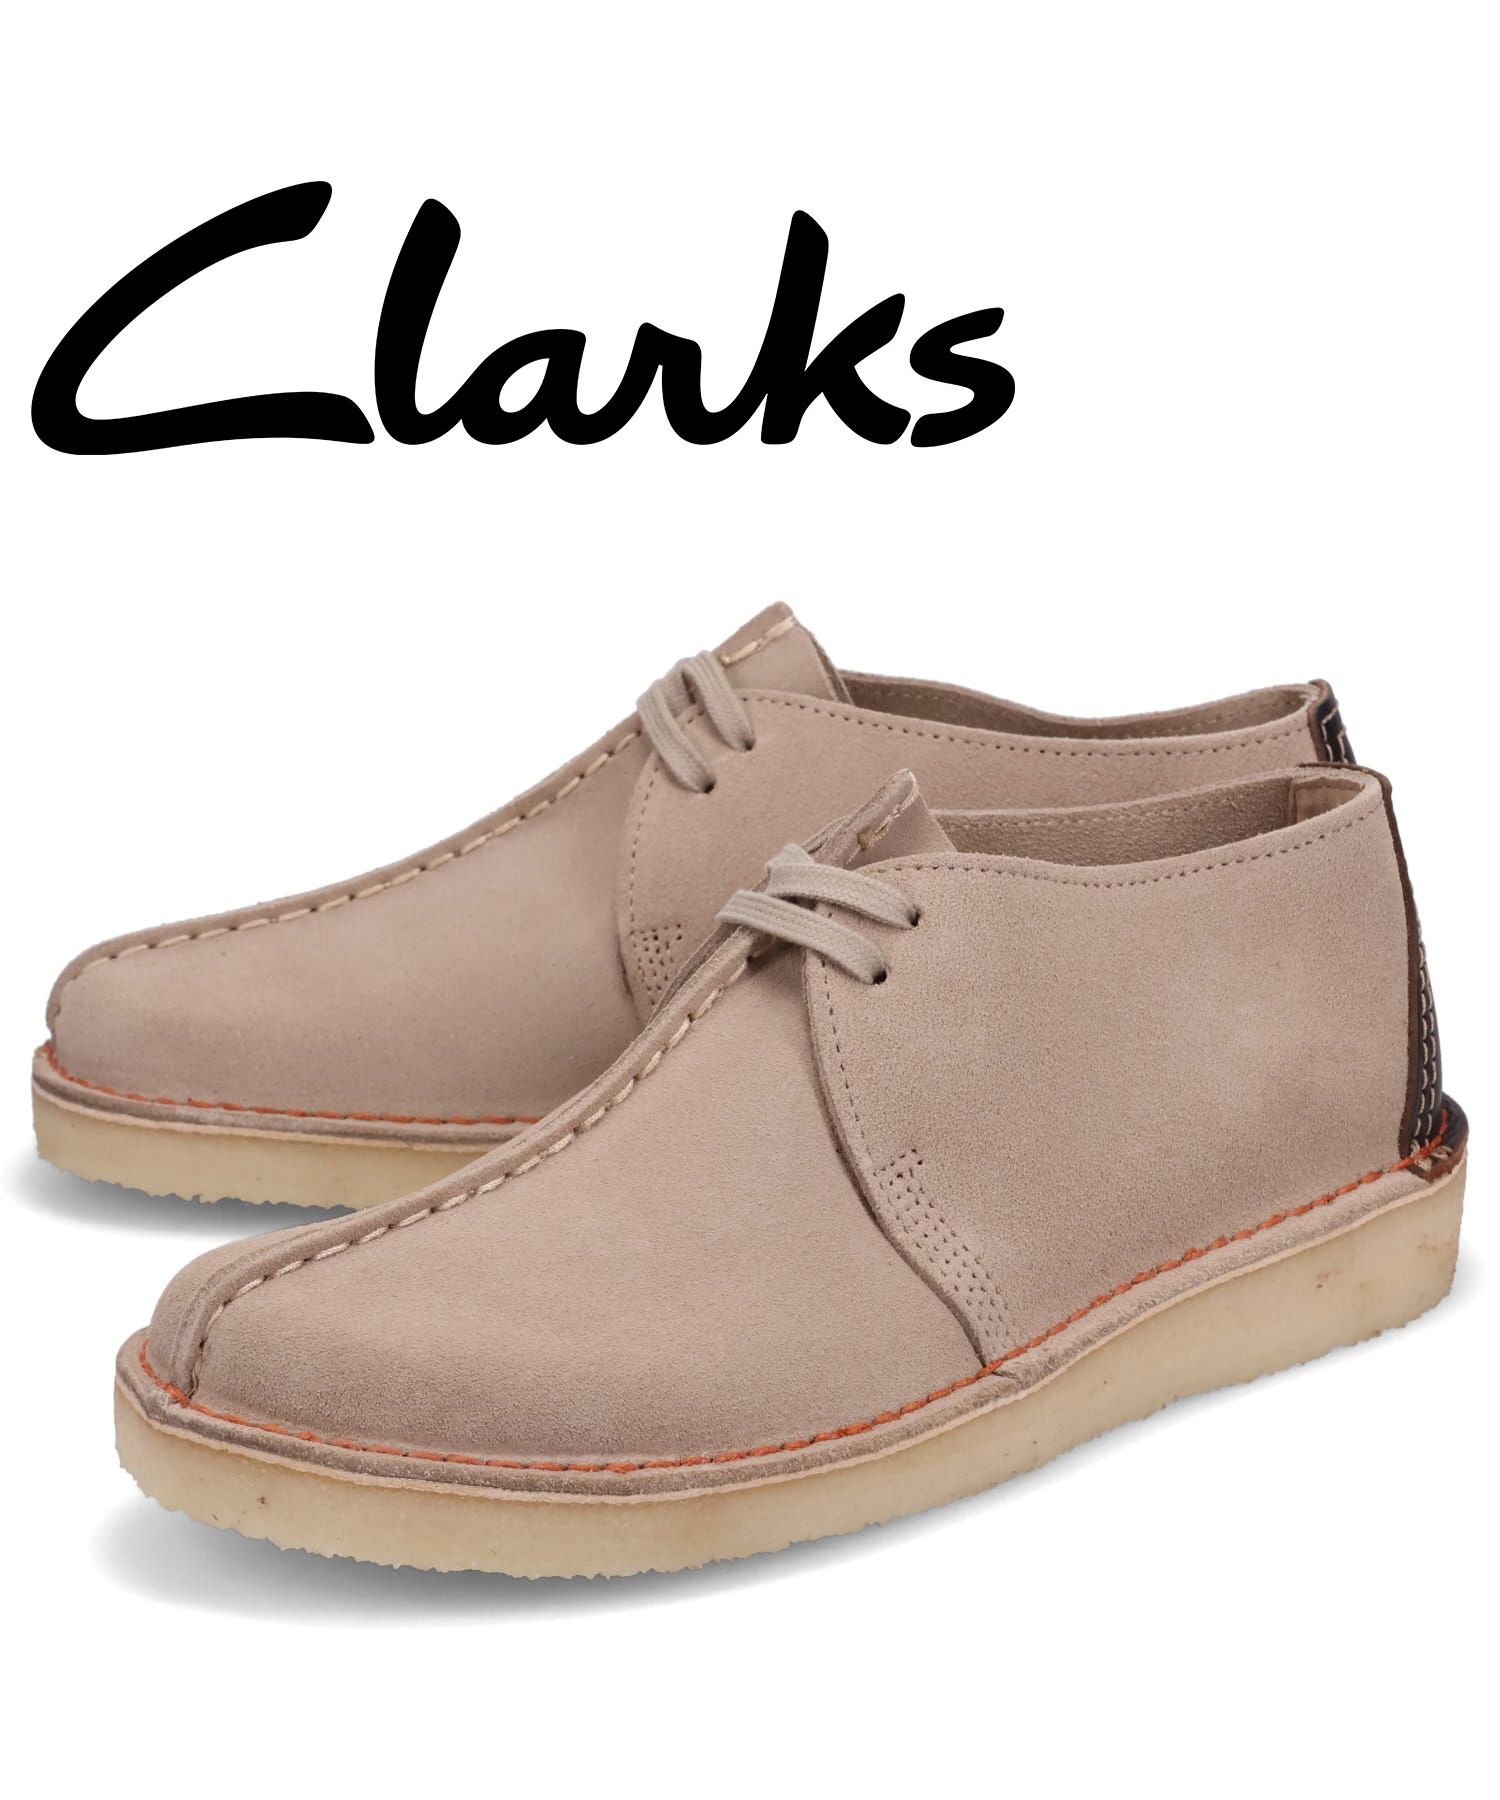 クラークス - 靴